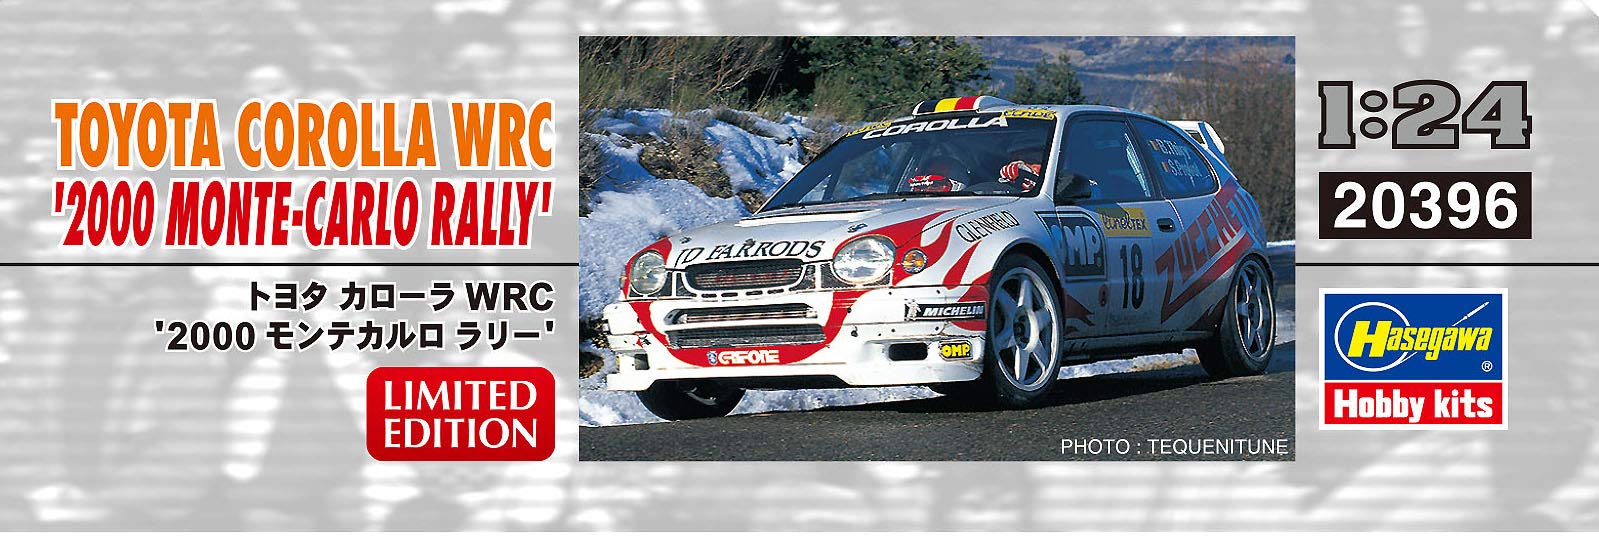 HASEGAWA 20396 Toyota Corolla Wrc '2000 Monte-Carlo Rally' 1/24 Scale Kit